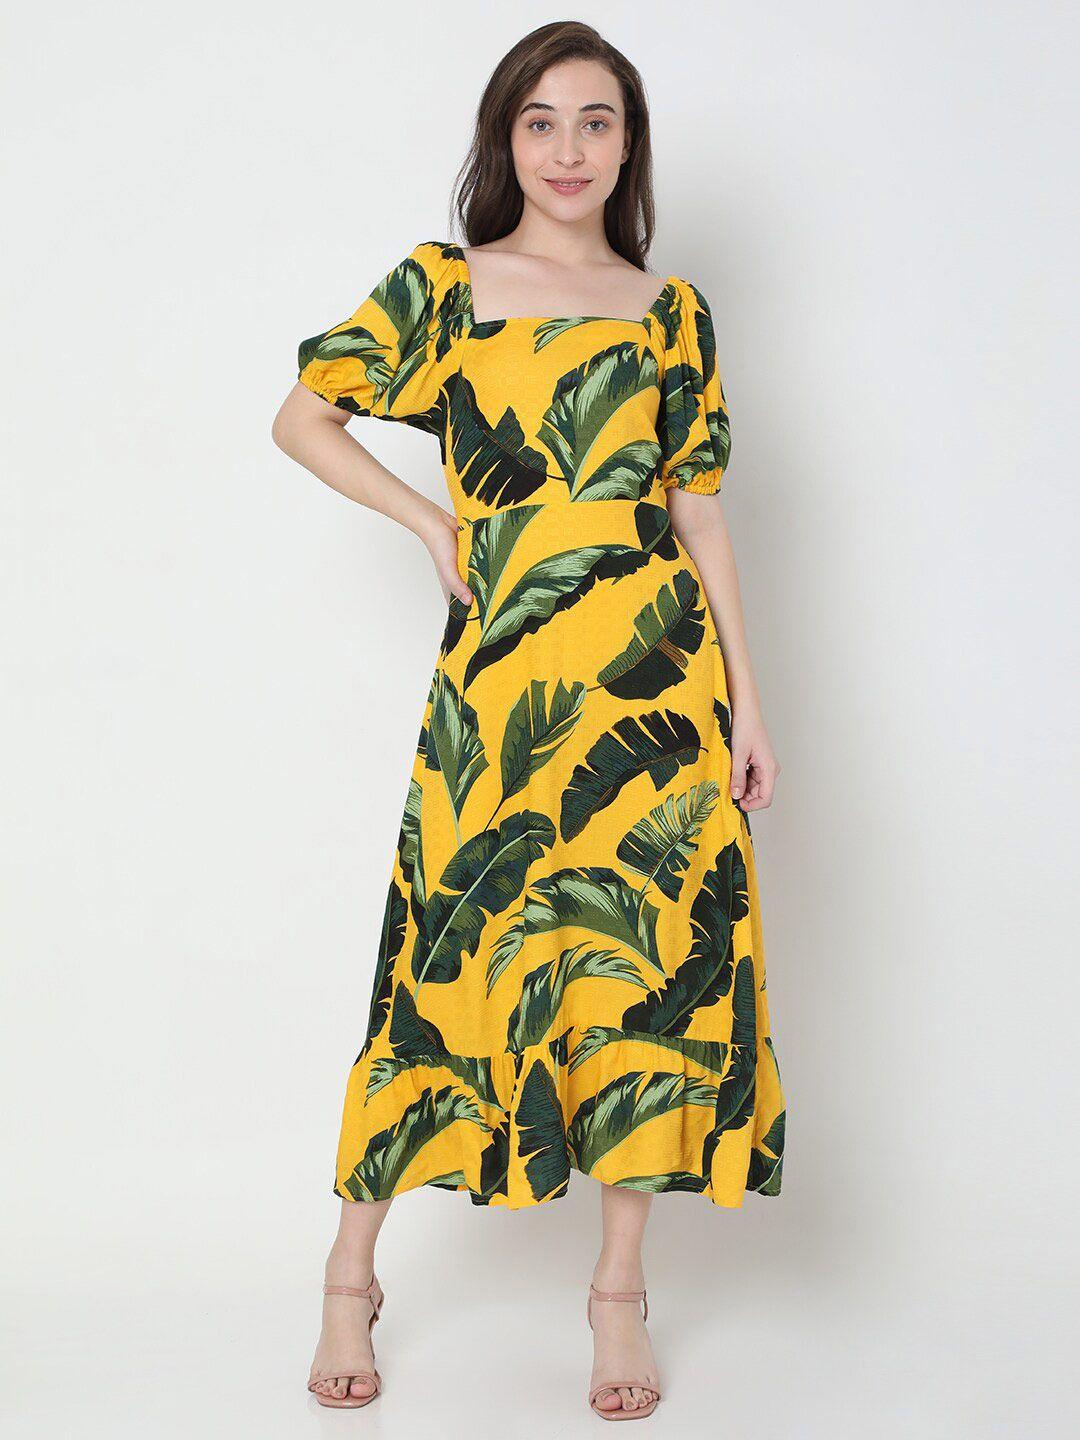 vero moda yellow & green tropical maxi dress